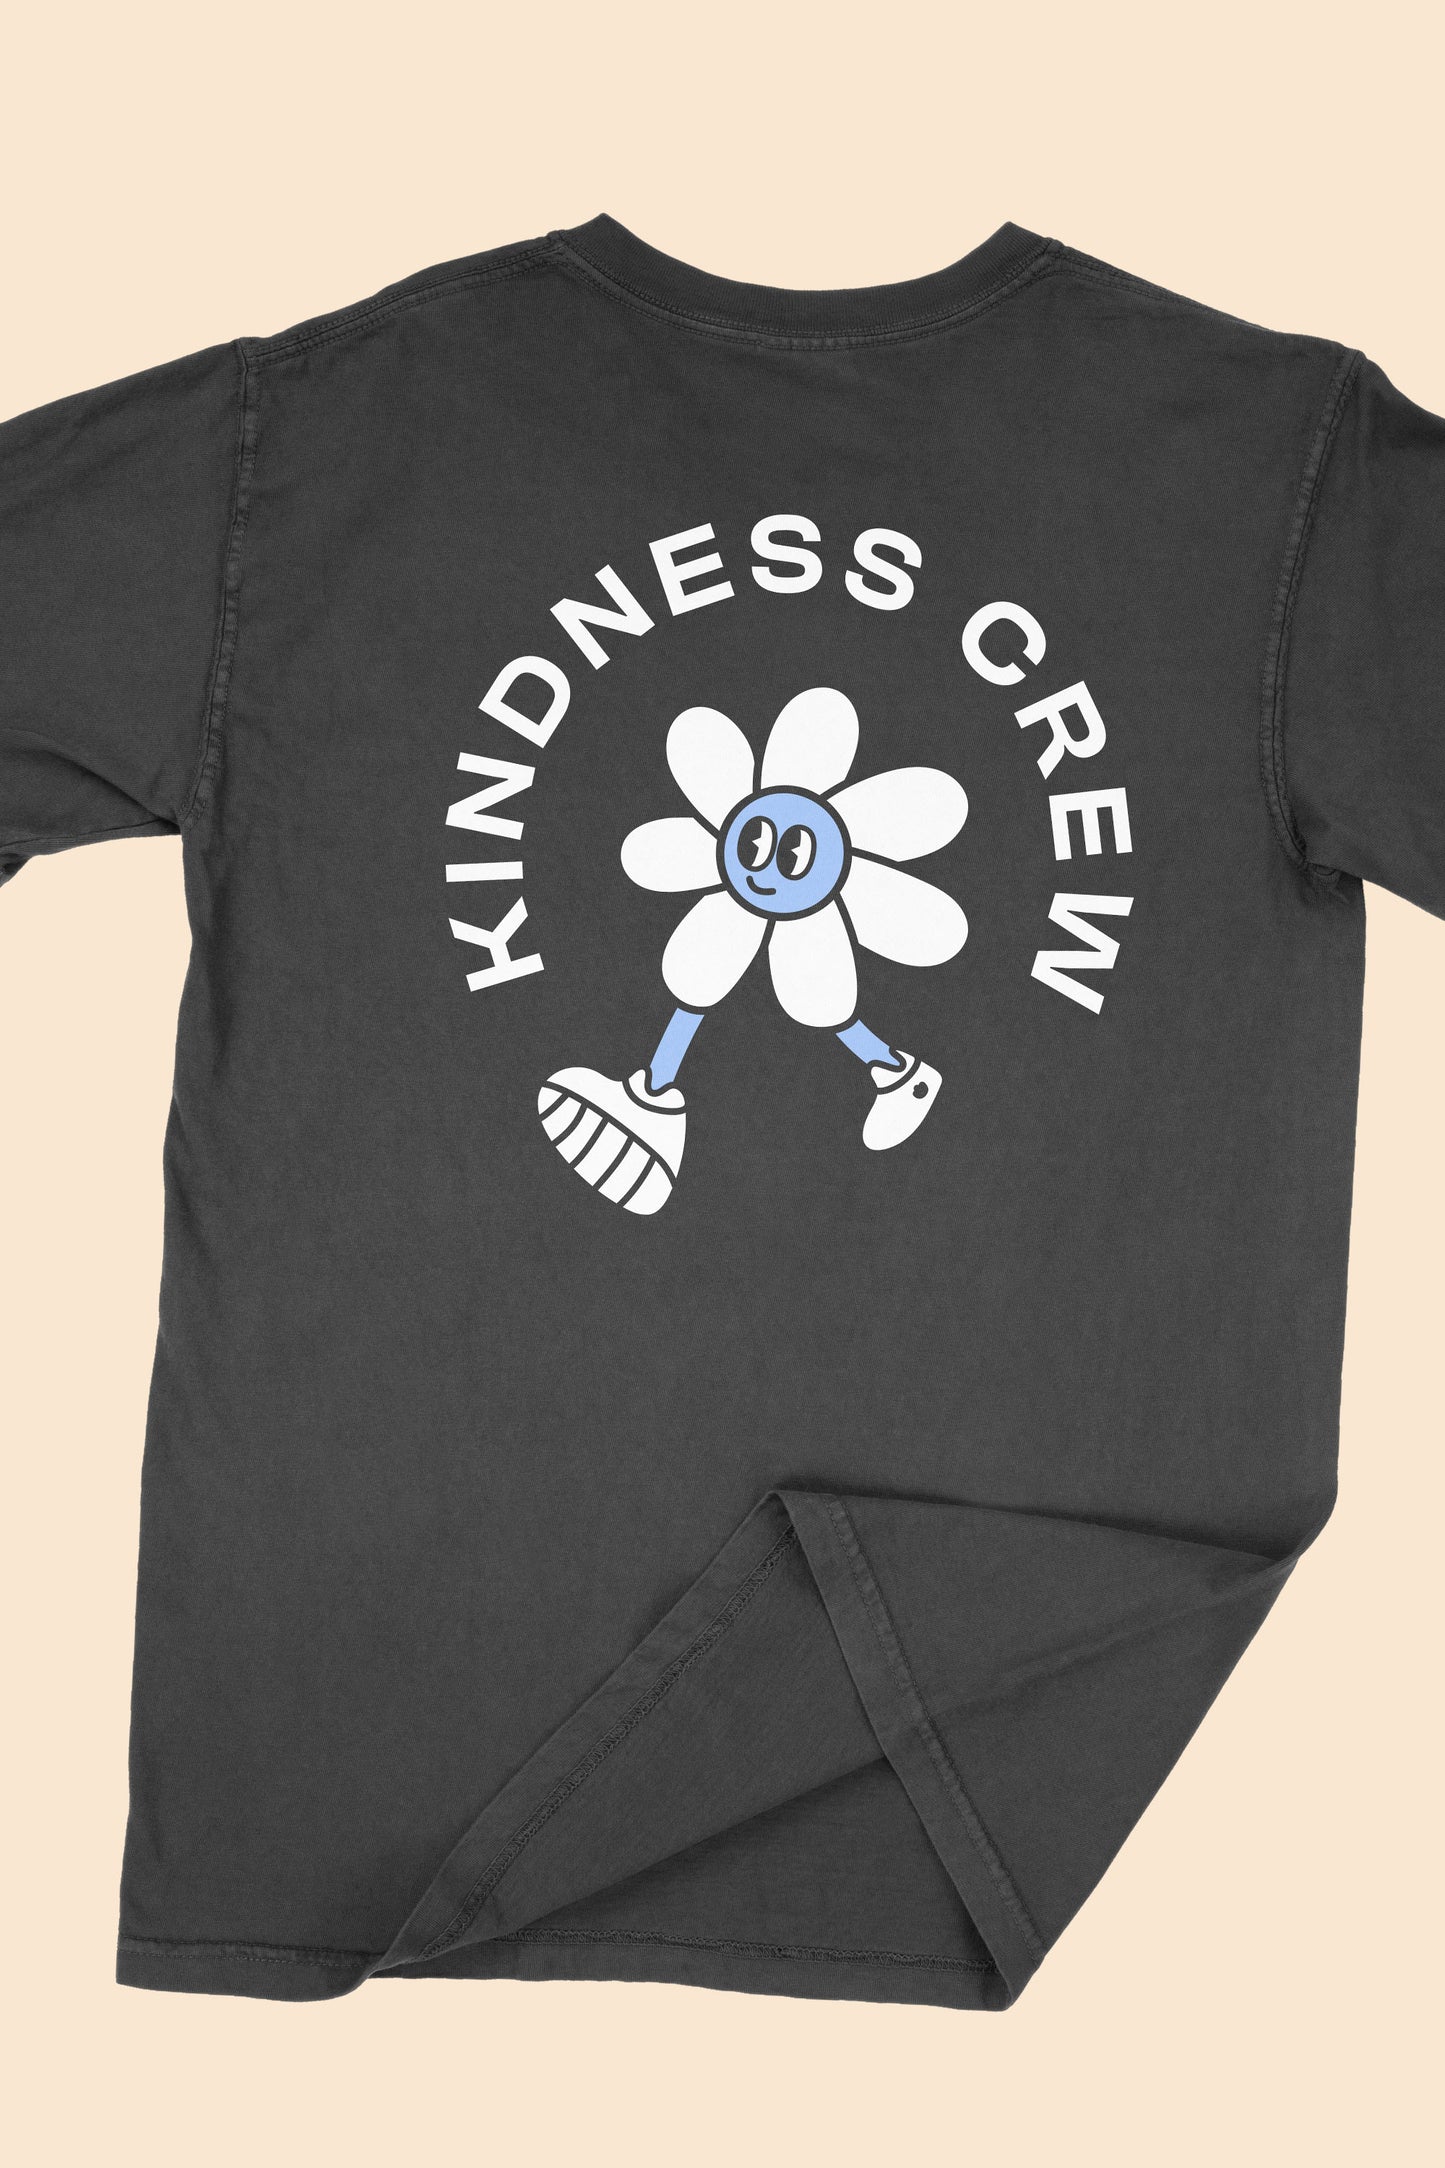 Kindness Crew T-Shirt